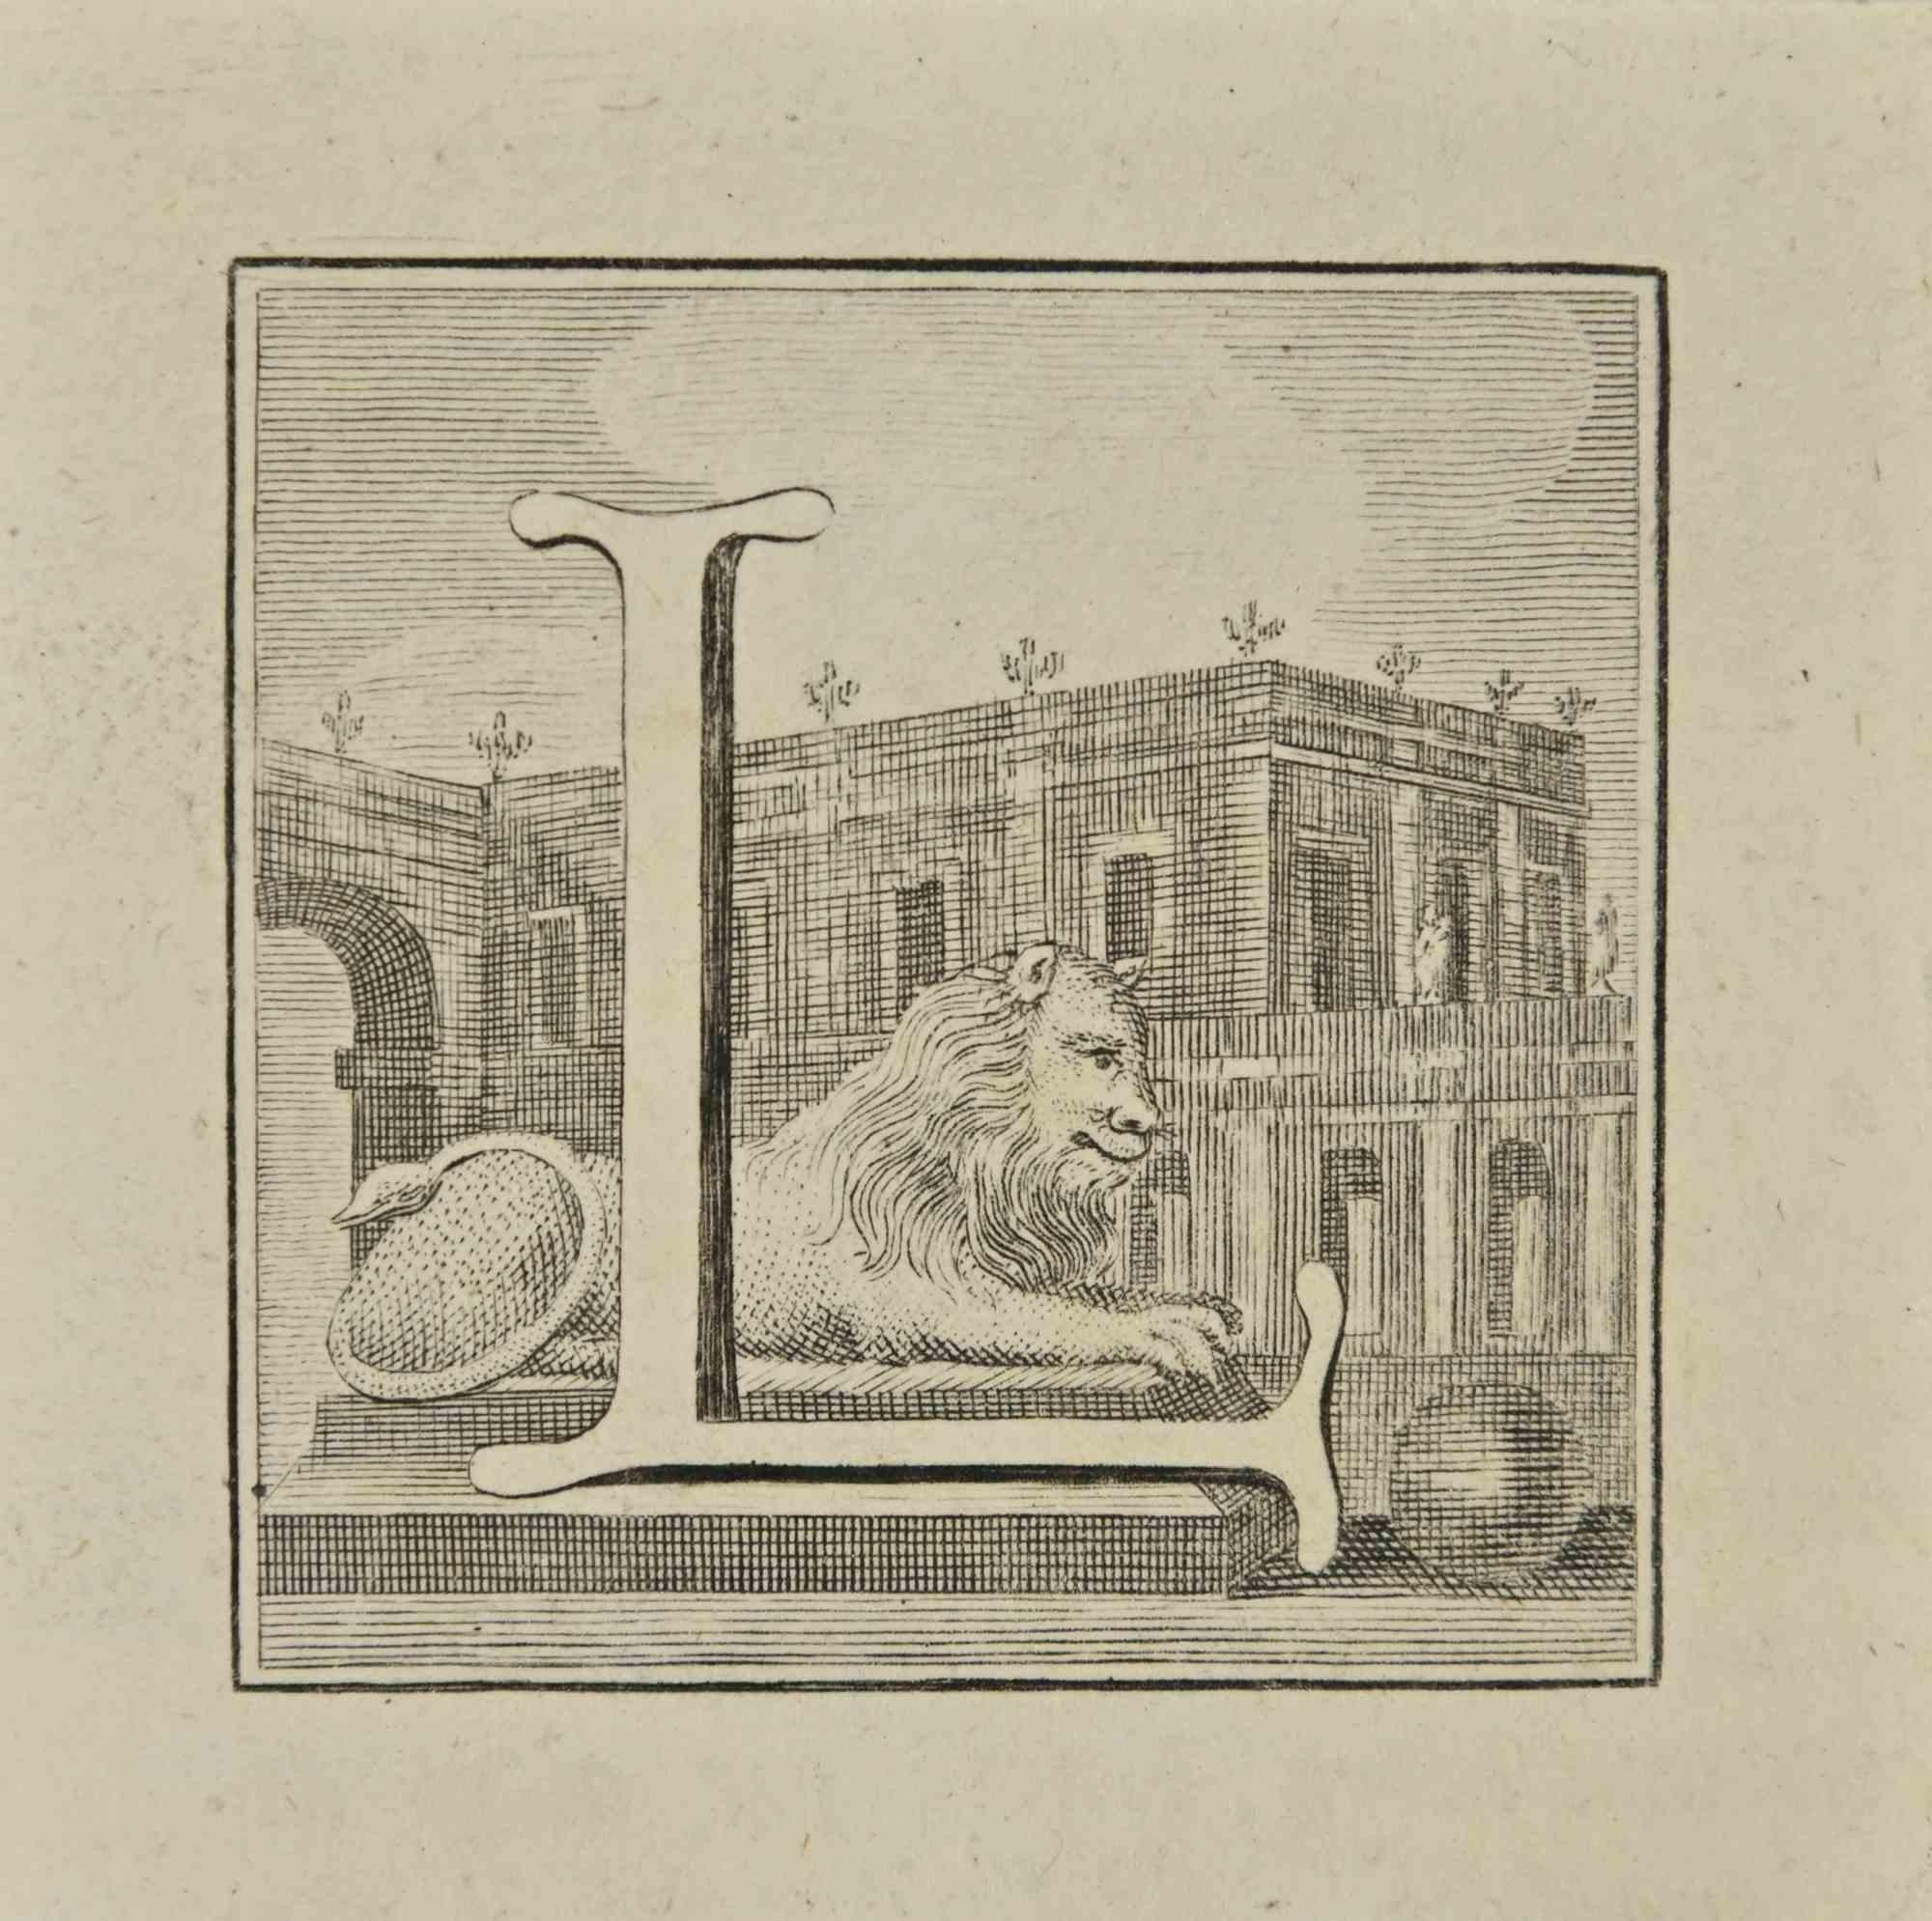 Lettre de l'alphabet L,  de la série "Antiquités d'Herculanum", est une gravure sur papier réalisée par Luigi Vanvitelli au 18ème siècle.

Bonnes conditions.

La gravure appartient à la suite d'estampes "Antiquités d'Herculanum exposées" (titre